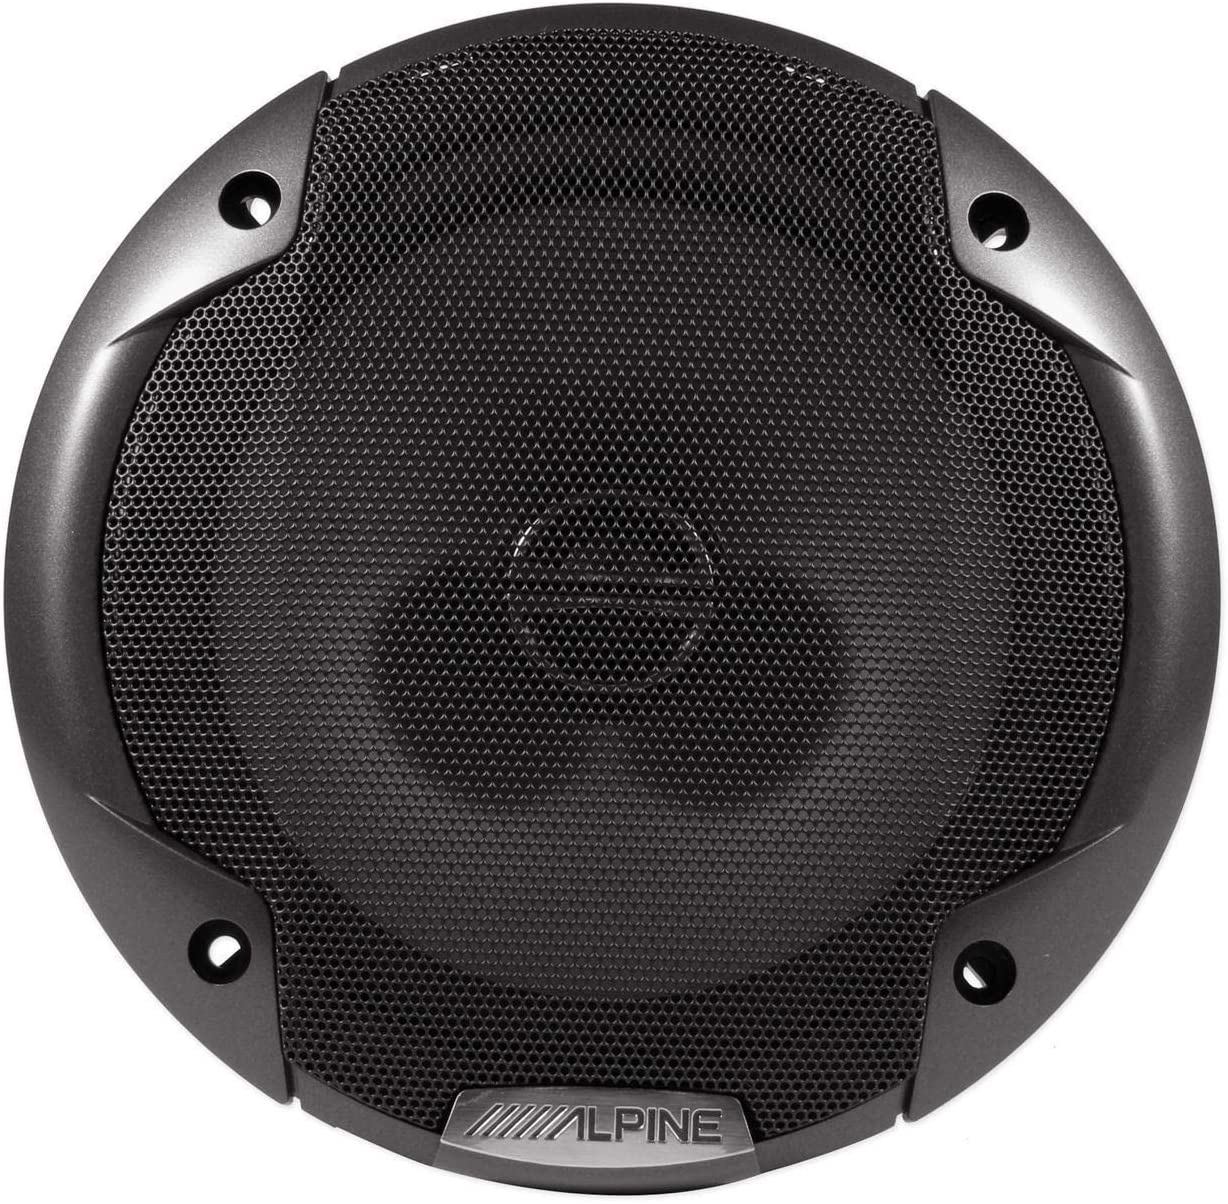 Alpine SPE-6000 Car Speaker 480W Max, 120W RMS 6.5" 2-Way Type-E Coaxial Speakers w/ Silk Tweeters